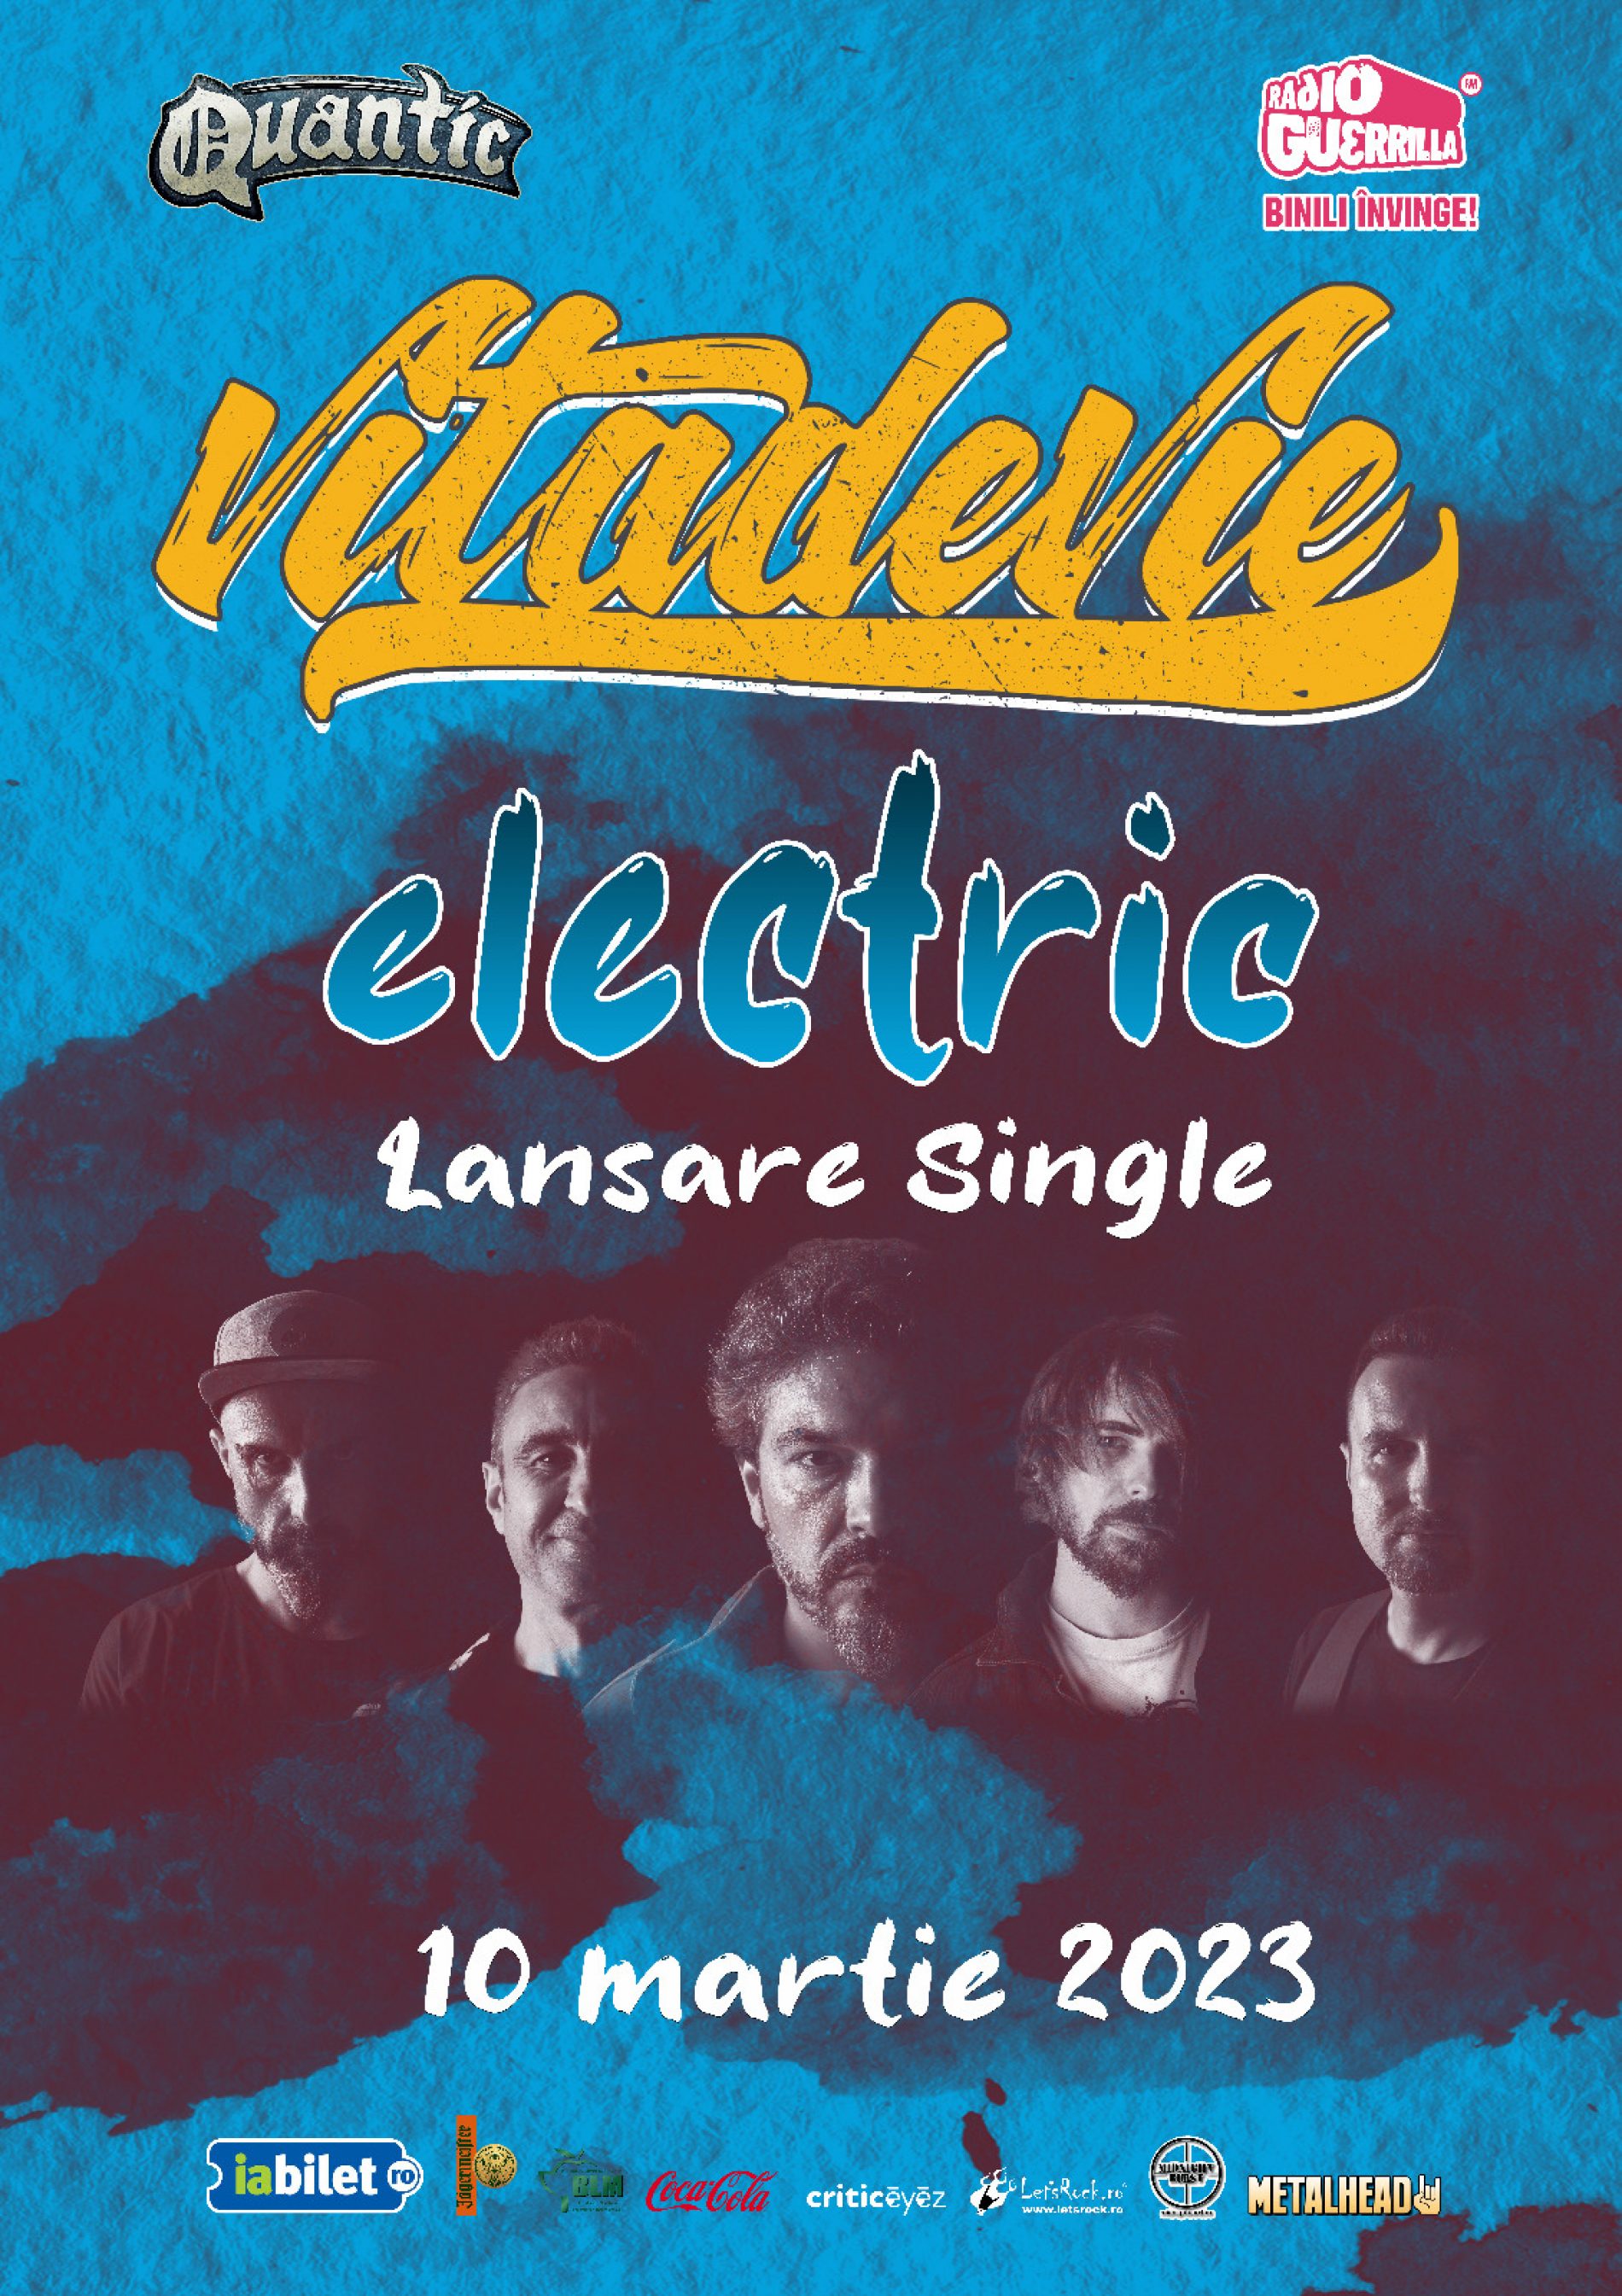 Concert Vița de Vie – Electric în Quantic